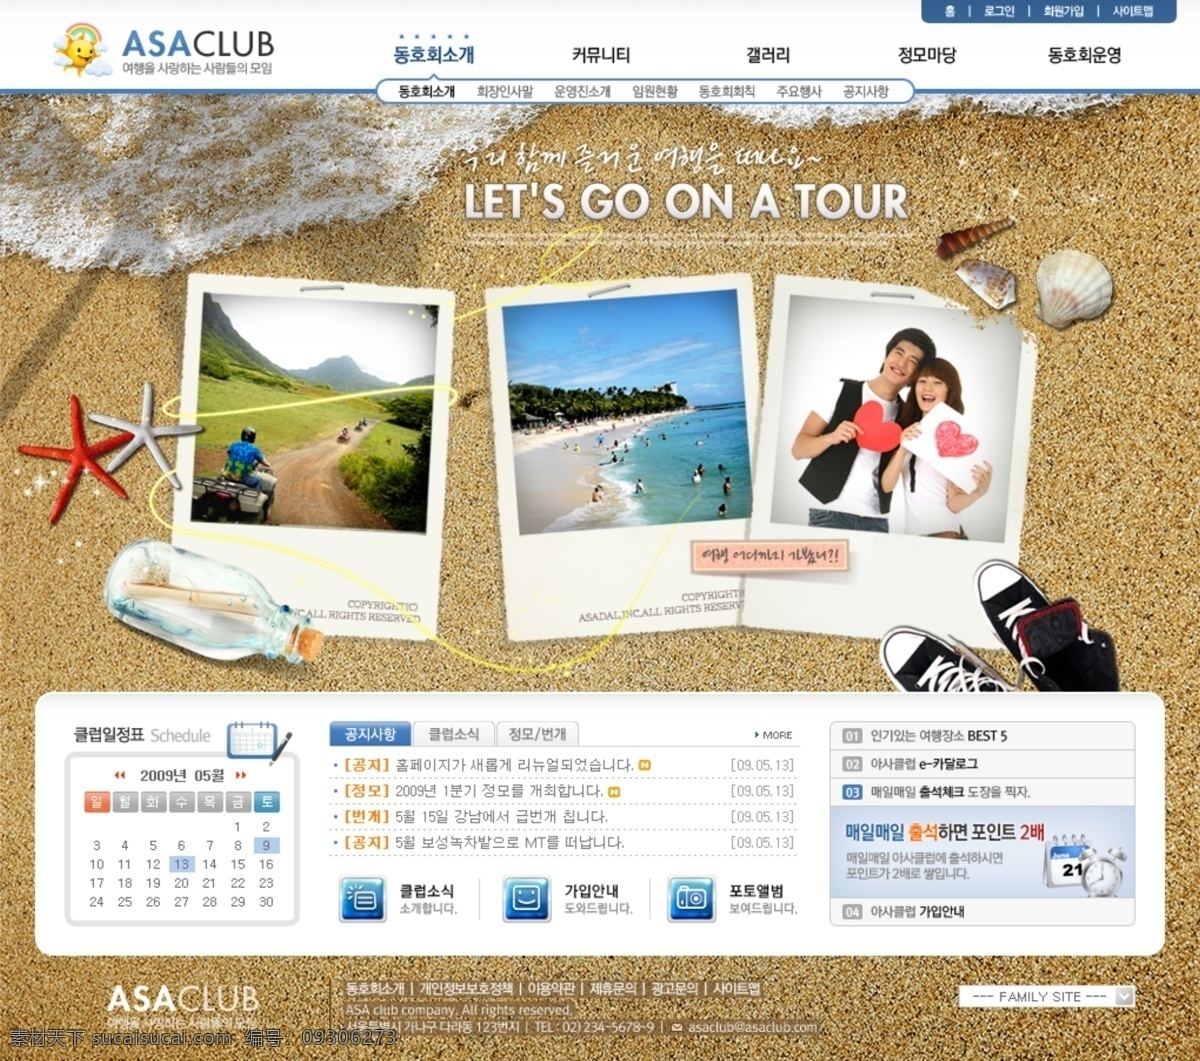 旅游网站 模板 psd素材 韩国网站模板 旅游网站模板 网页模板 网页素材